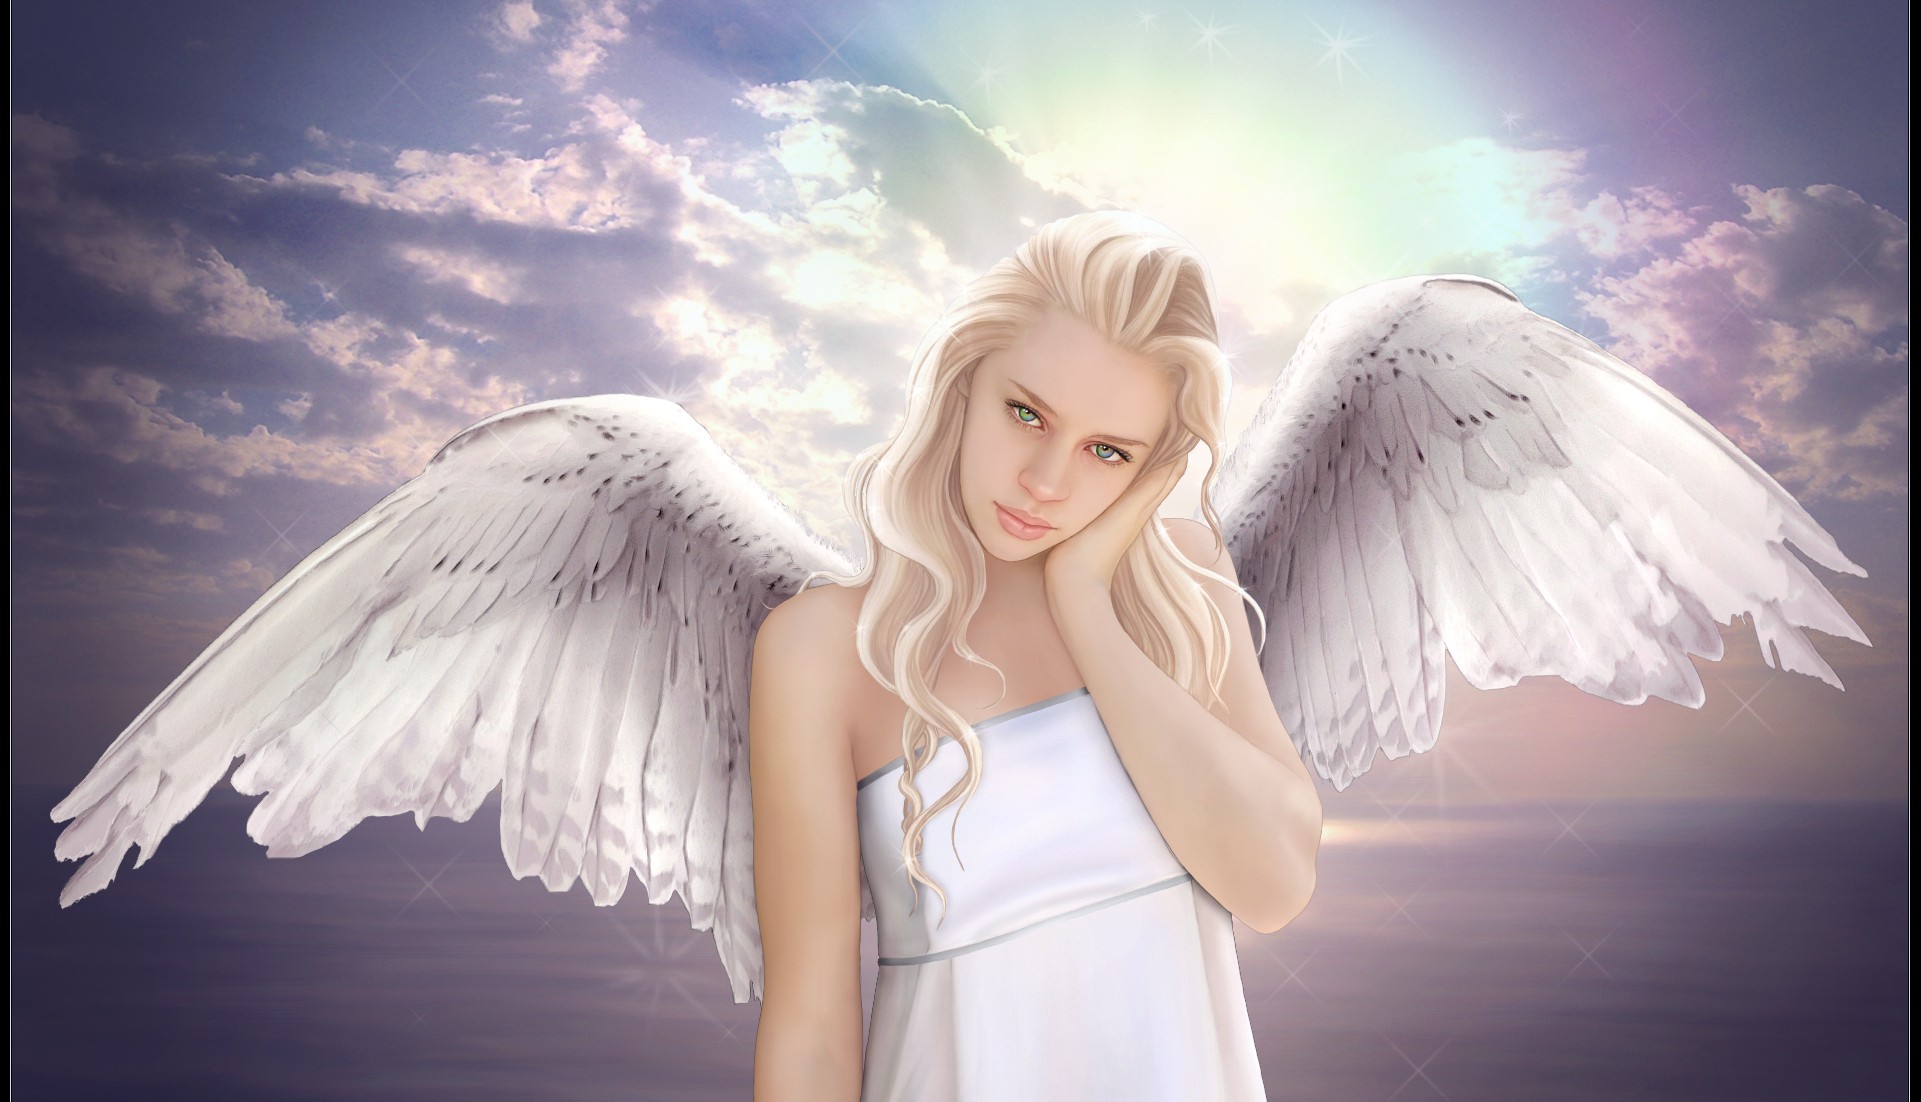 General 1921x1102 wings fantasy girl angel sky blonde fantasy art looking at viewer women